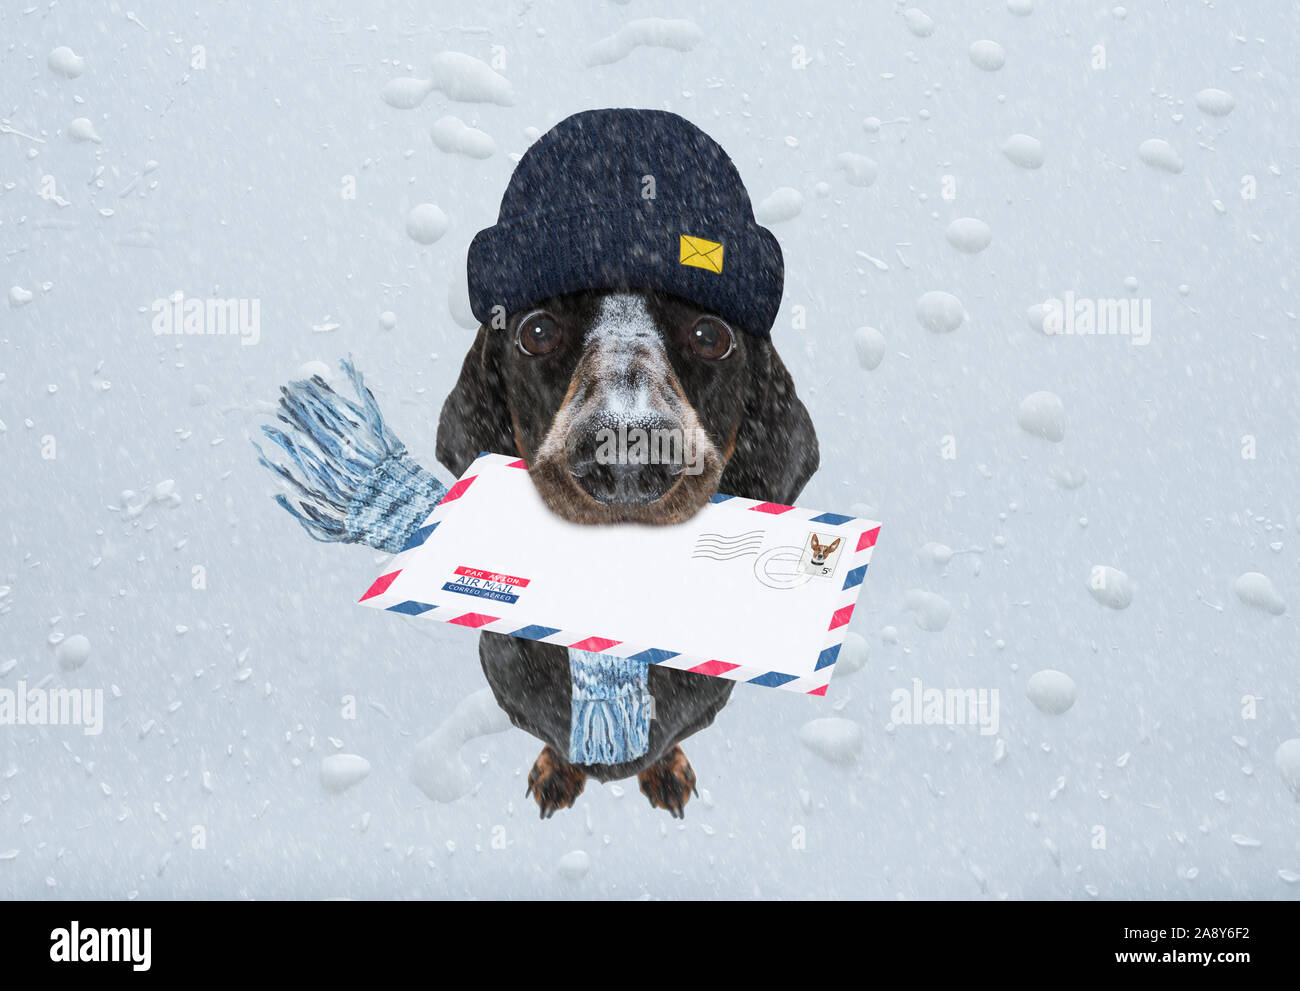 Postman teckel chien saucisse offrant une grande enveloppe vide blanc vide, avec des boîtes et des paquets , pluie et neige hiver Banque D'Images